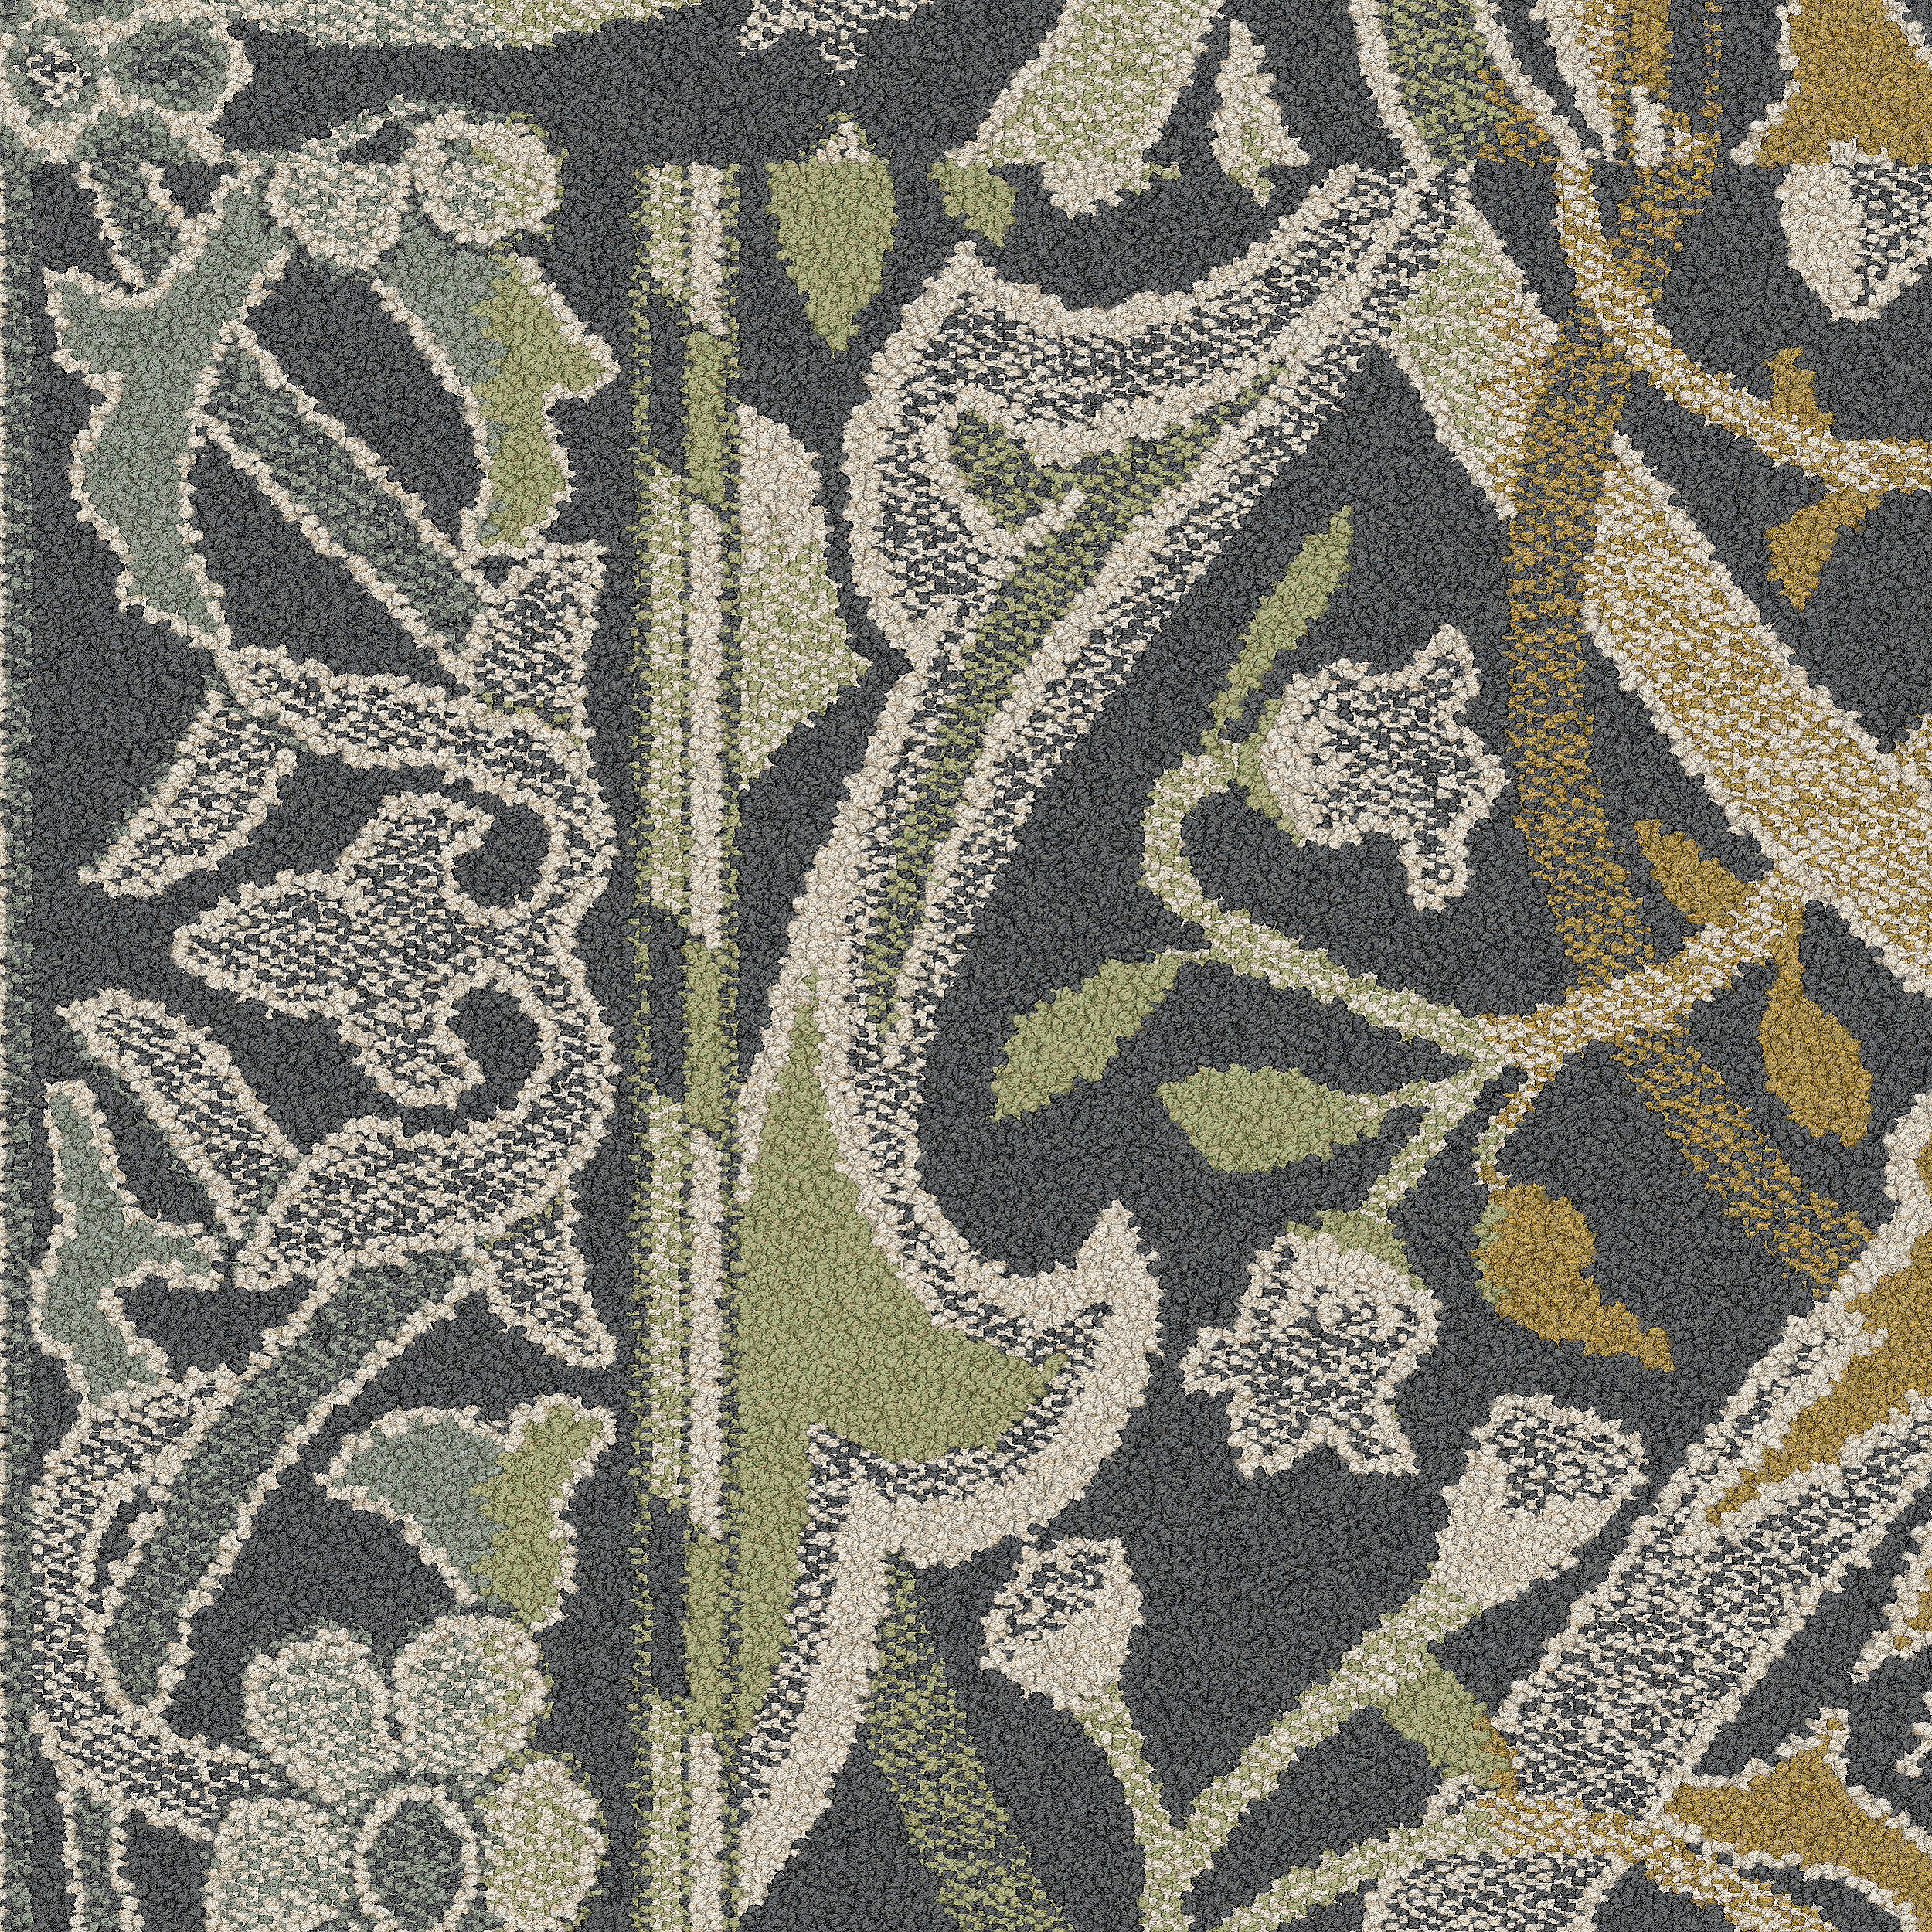 Arley carpet tile in Lichen Bildnummer 5